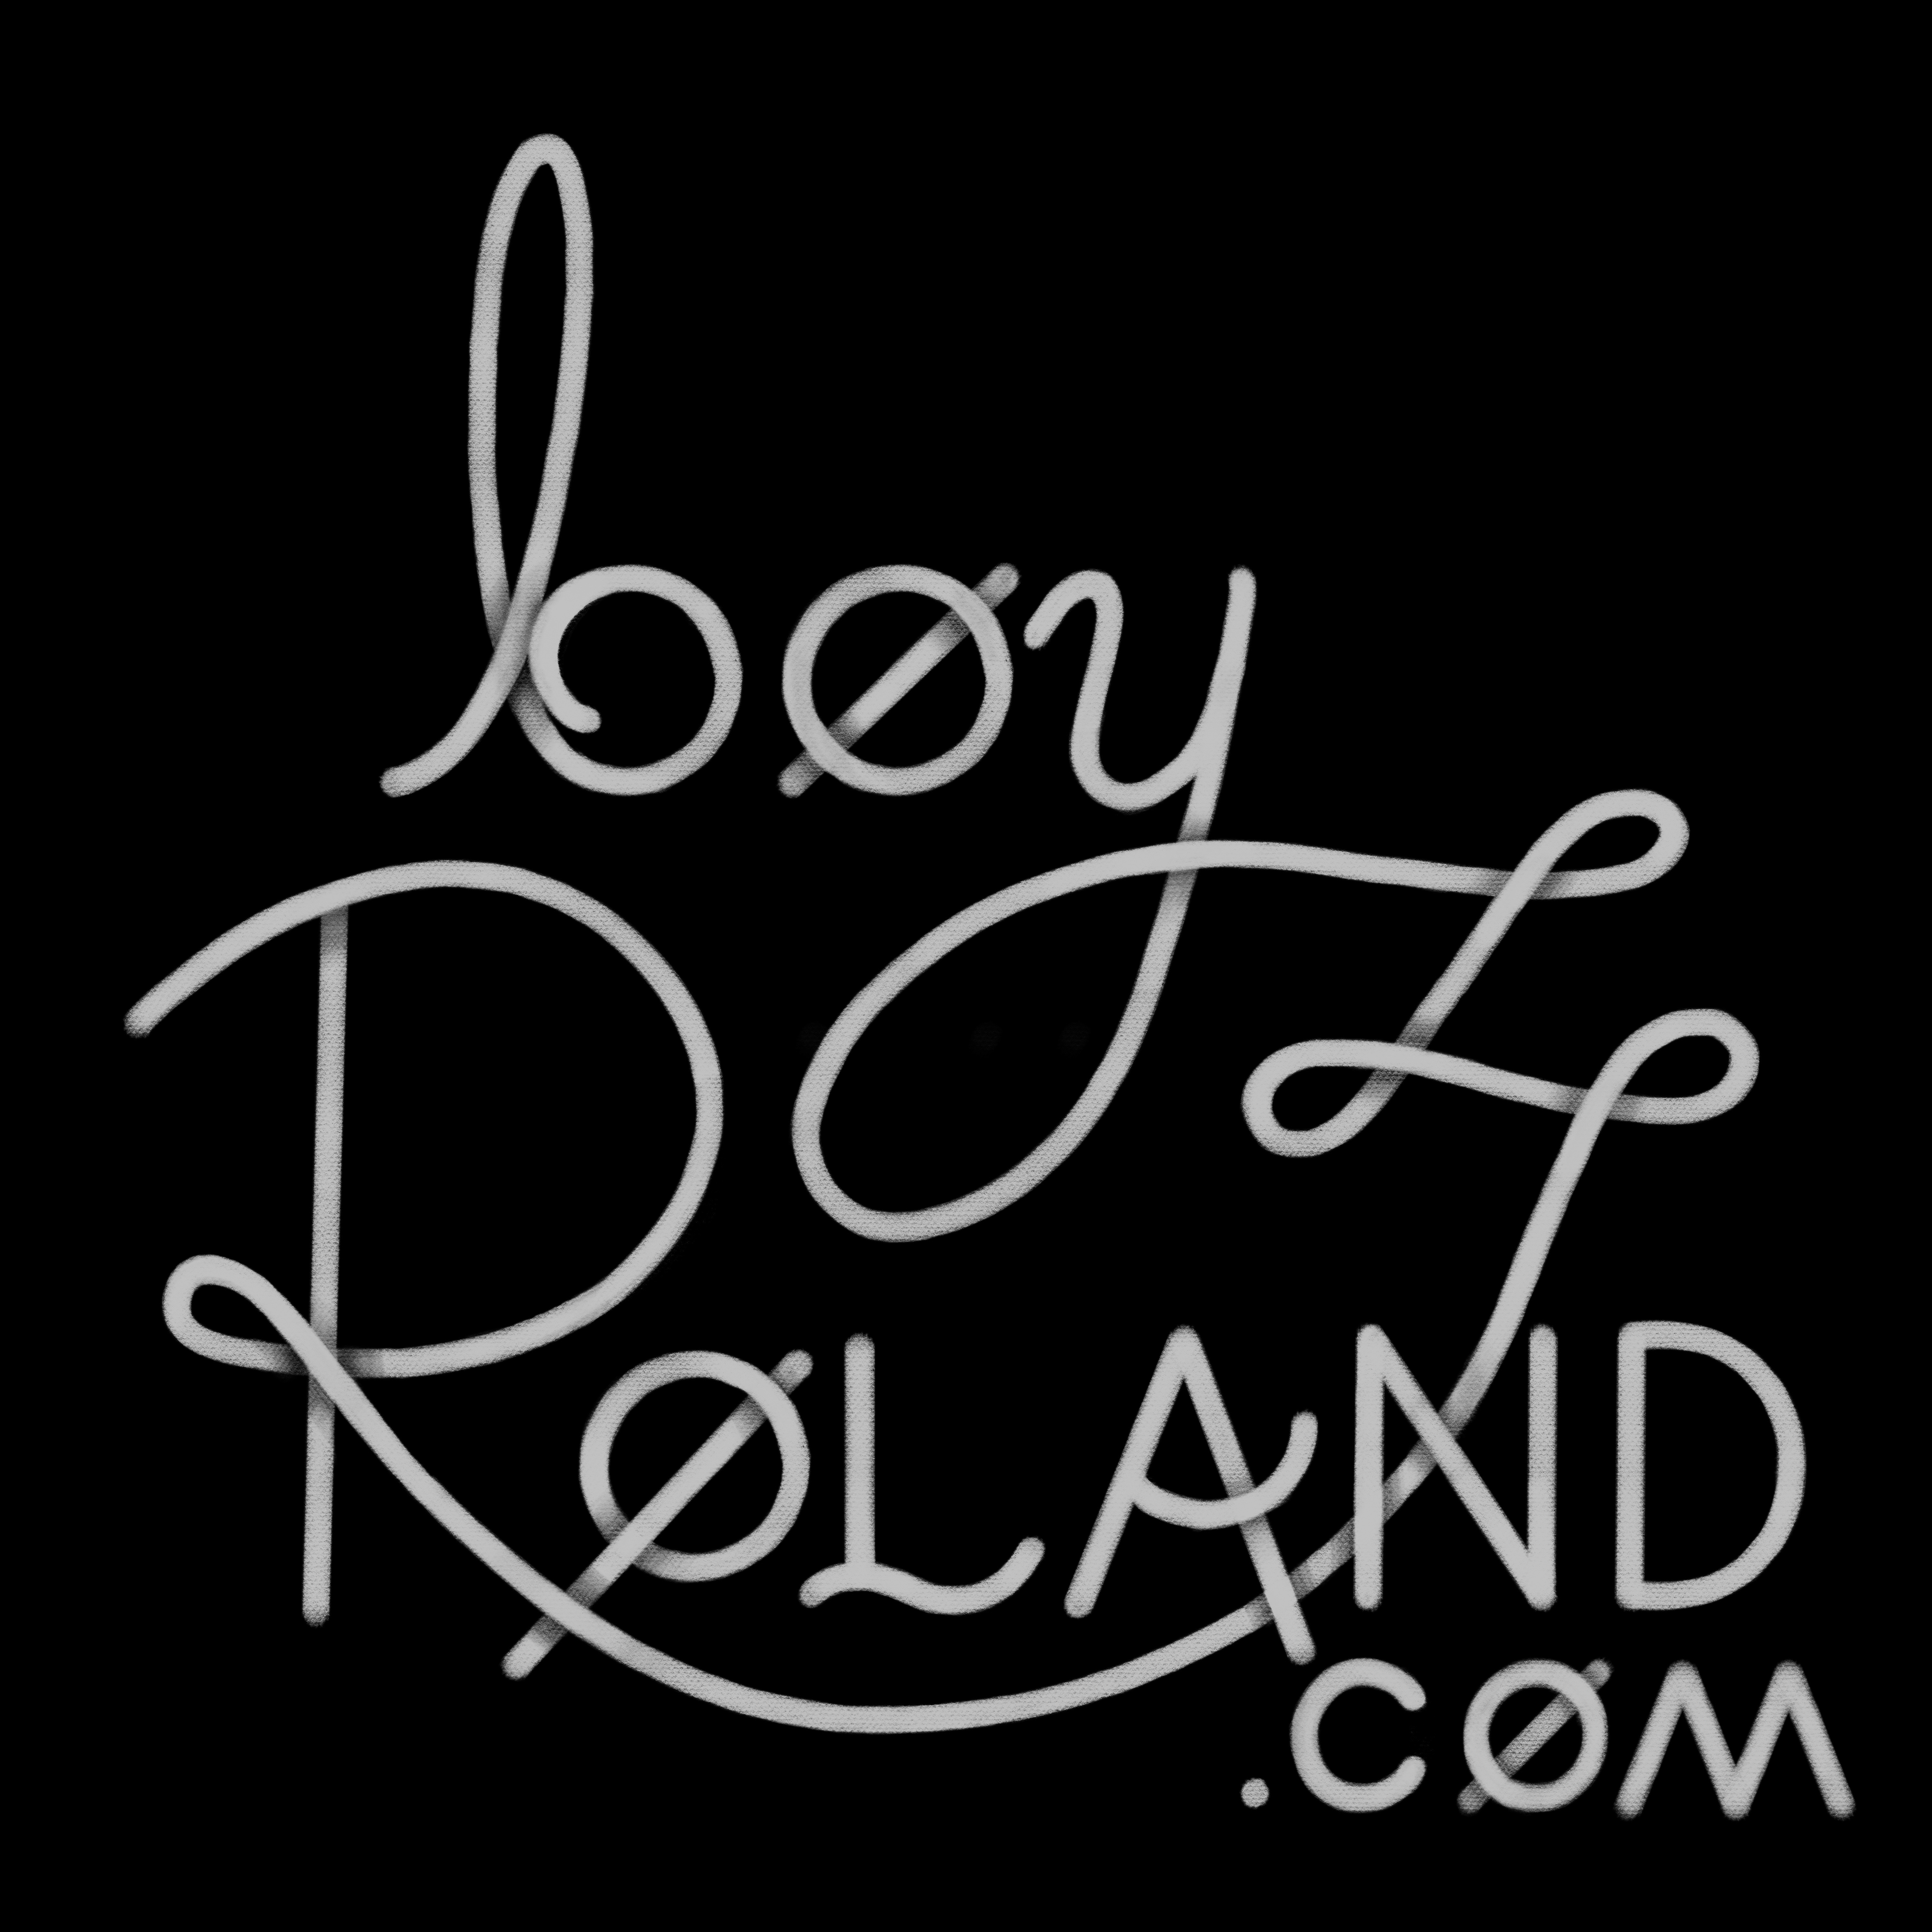 boy Roland